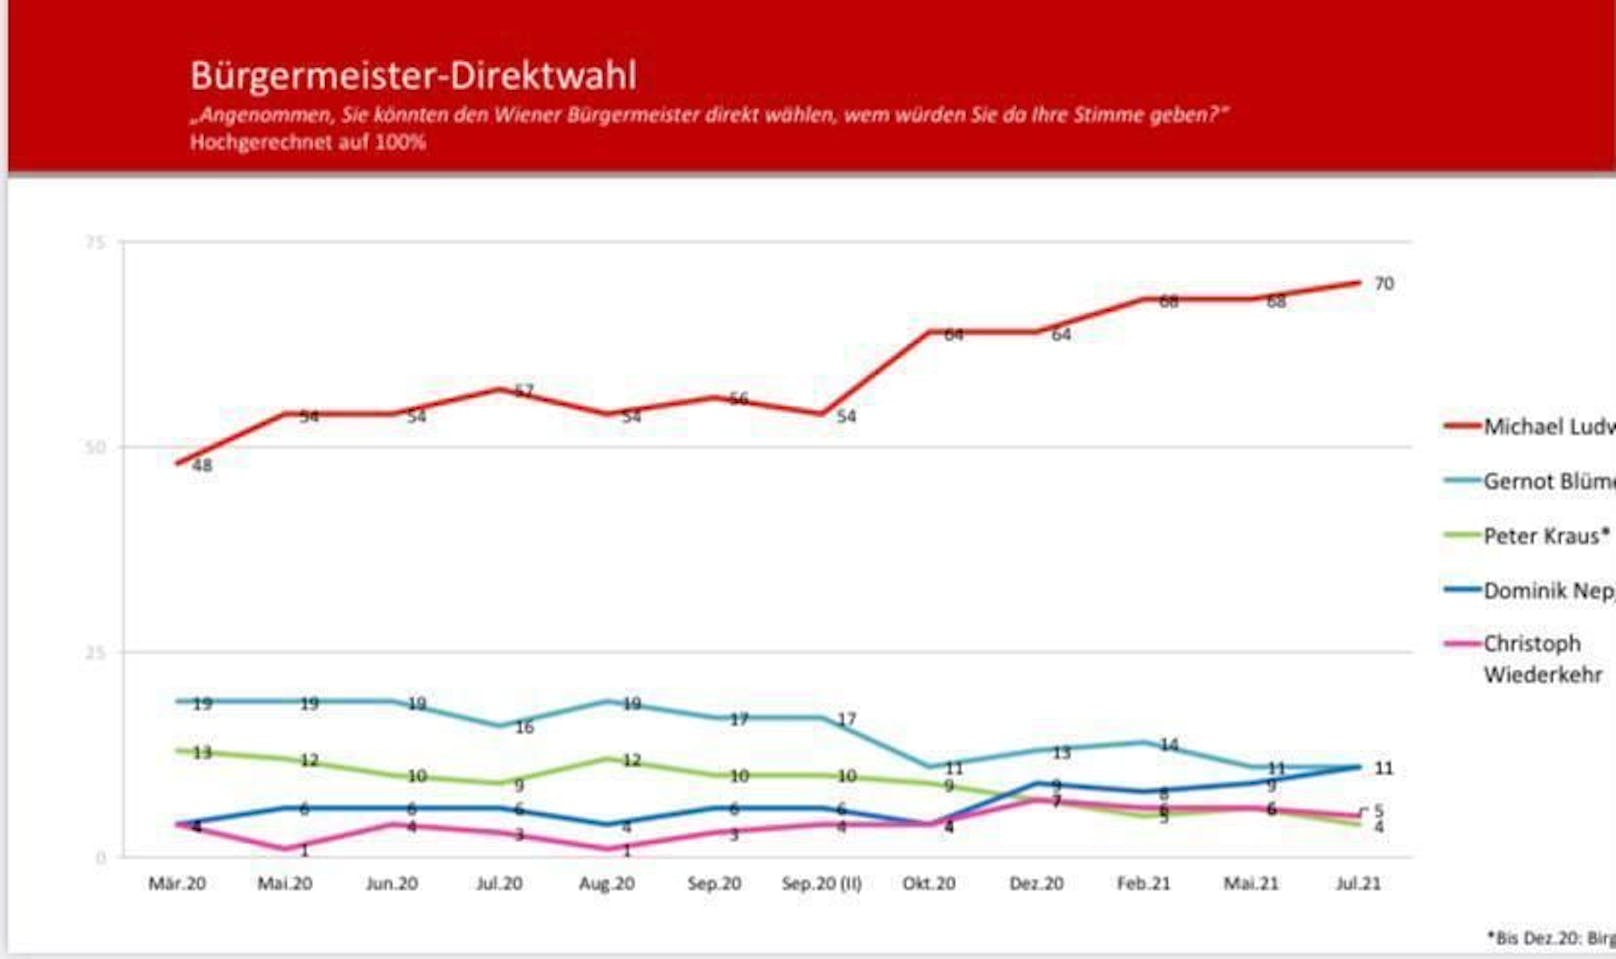 Bürgermeister Michael Ludwig (SPÖ) hängt die Konkurrenz in der Frage der Direktwahl klar ab. 70 Prozent der Befragten würden ihm ihre Stimme geben.